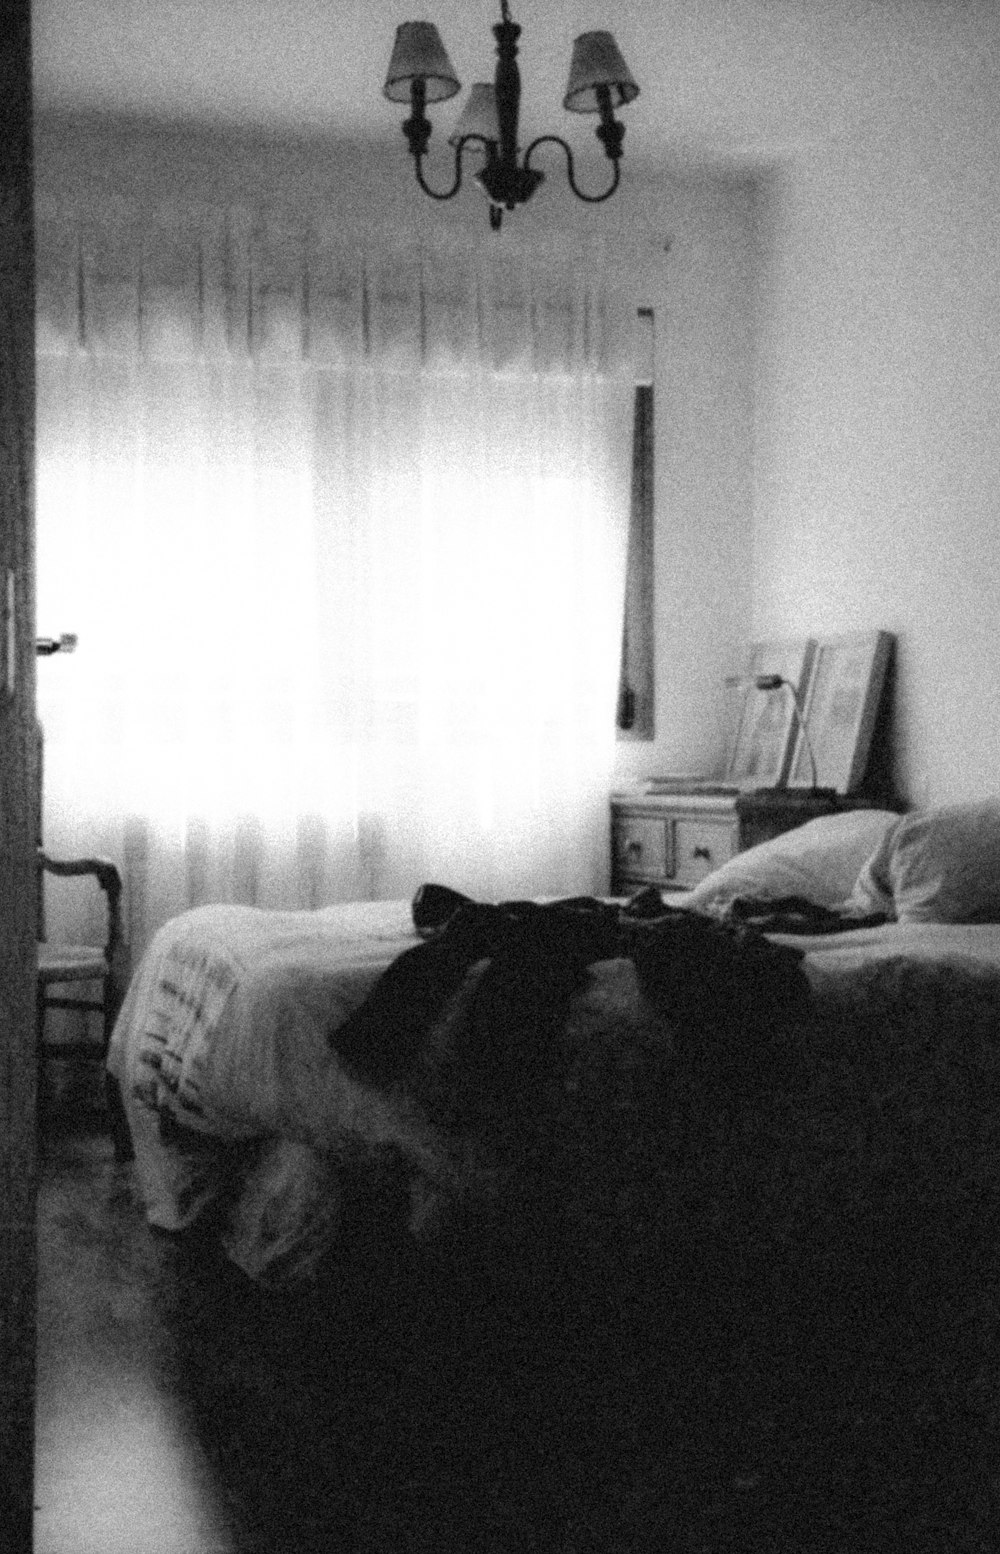 Schwarz-Weiß-Foto eines Hundes auf dem Bett